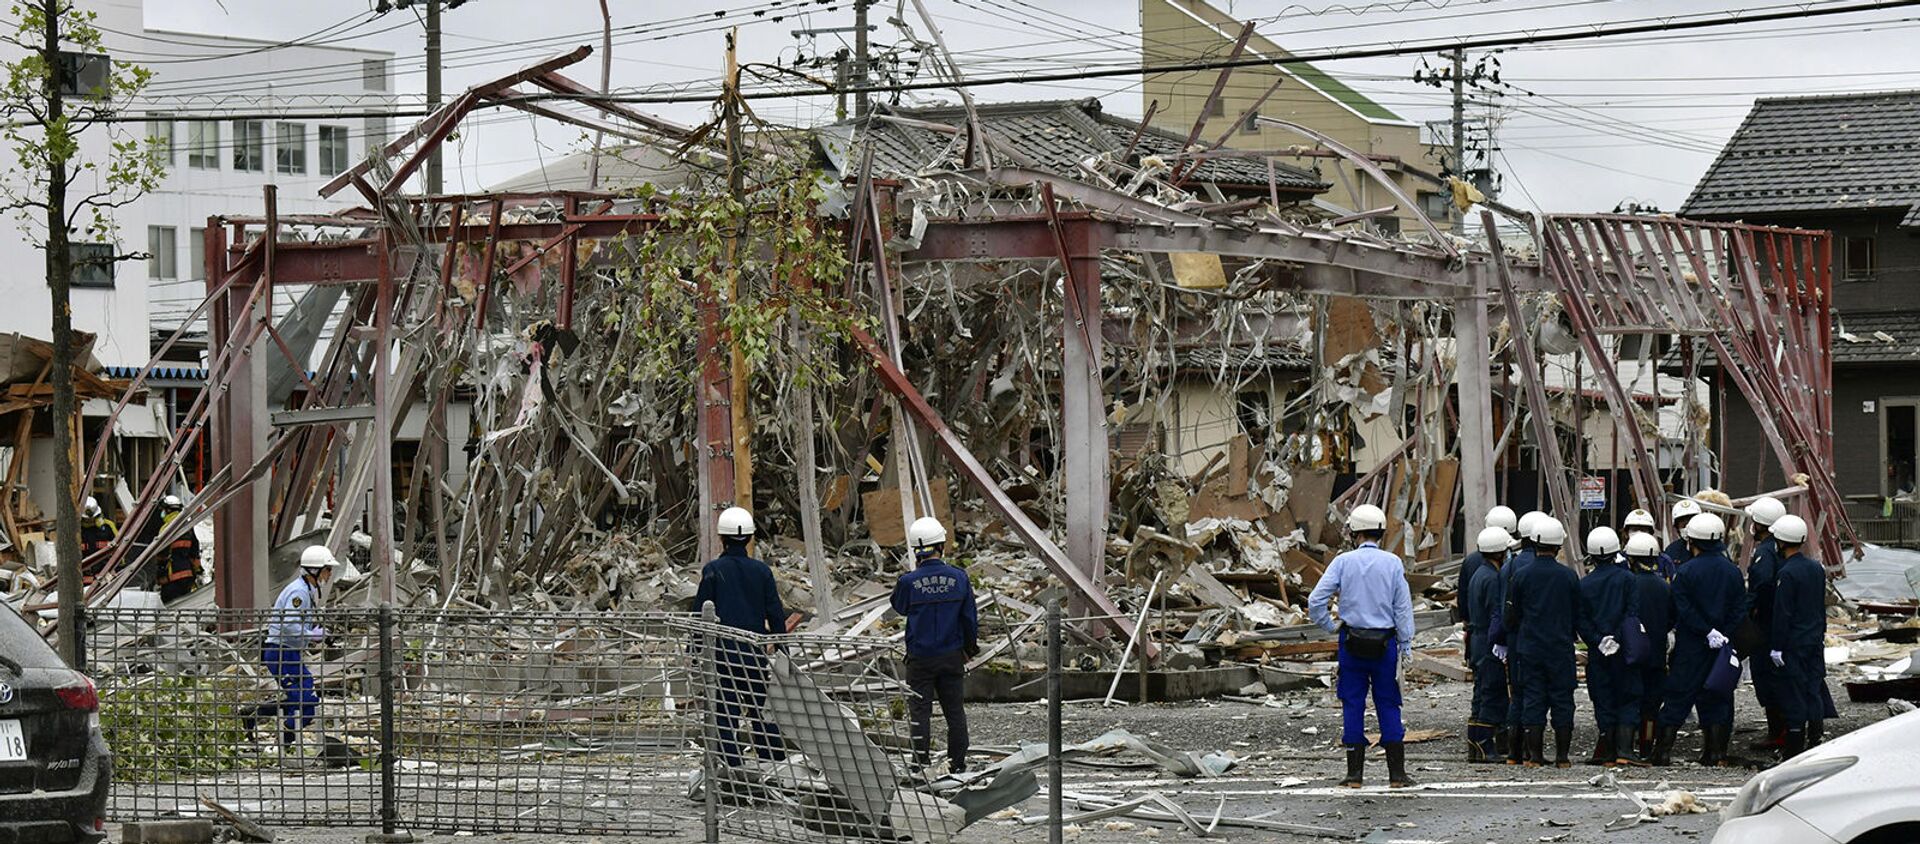 Взрыв в ресторане из-за утечки газа (20 июля 2020). Корияма, Япония - Sputnik Армения, 1920, 30.07.2020